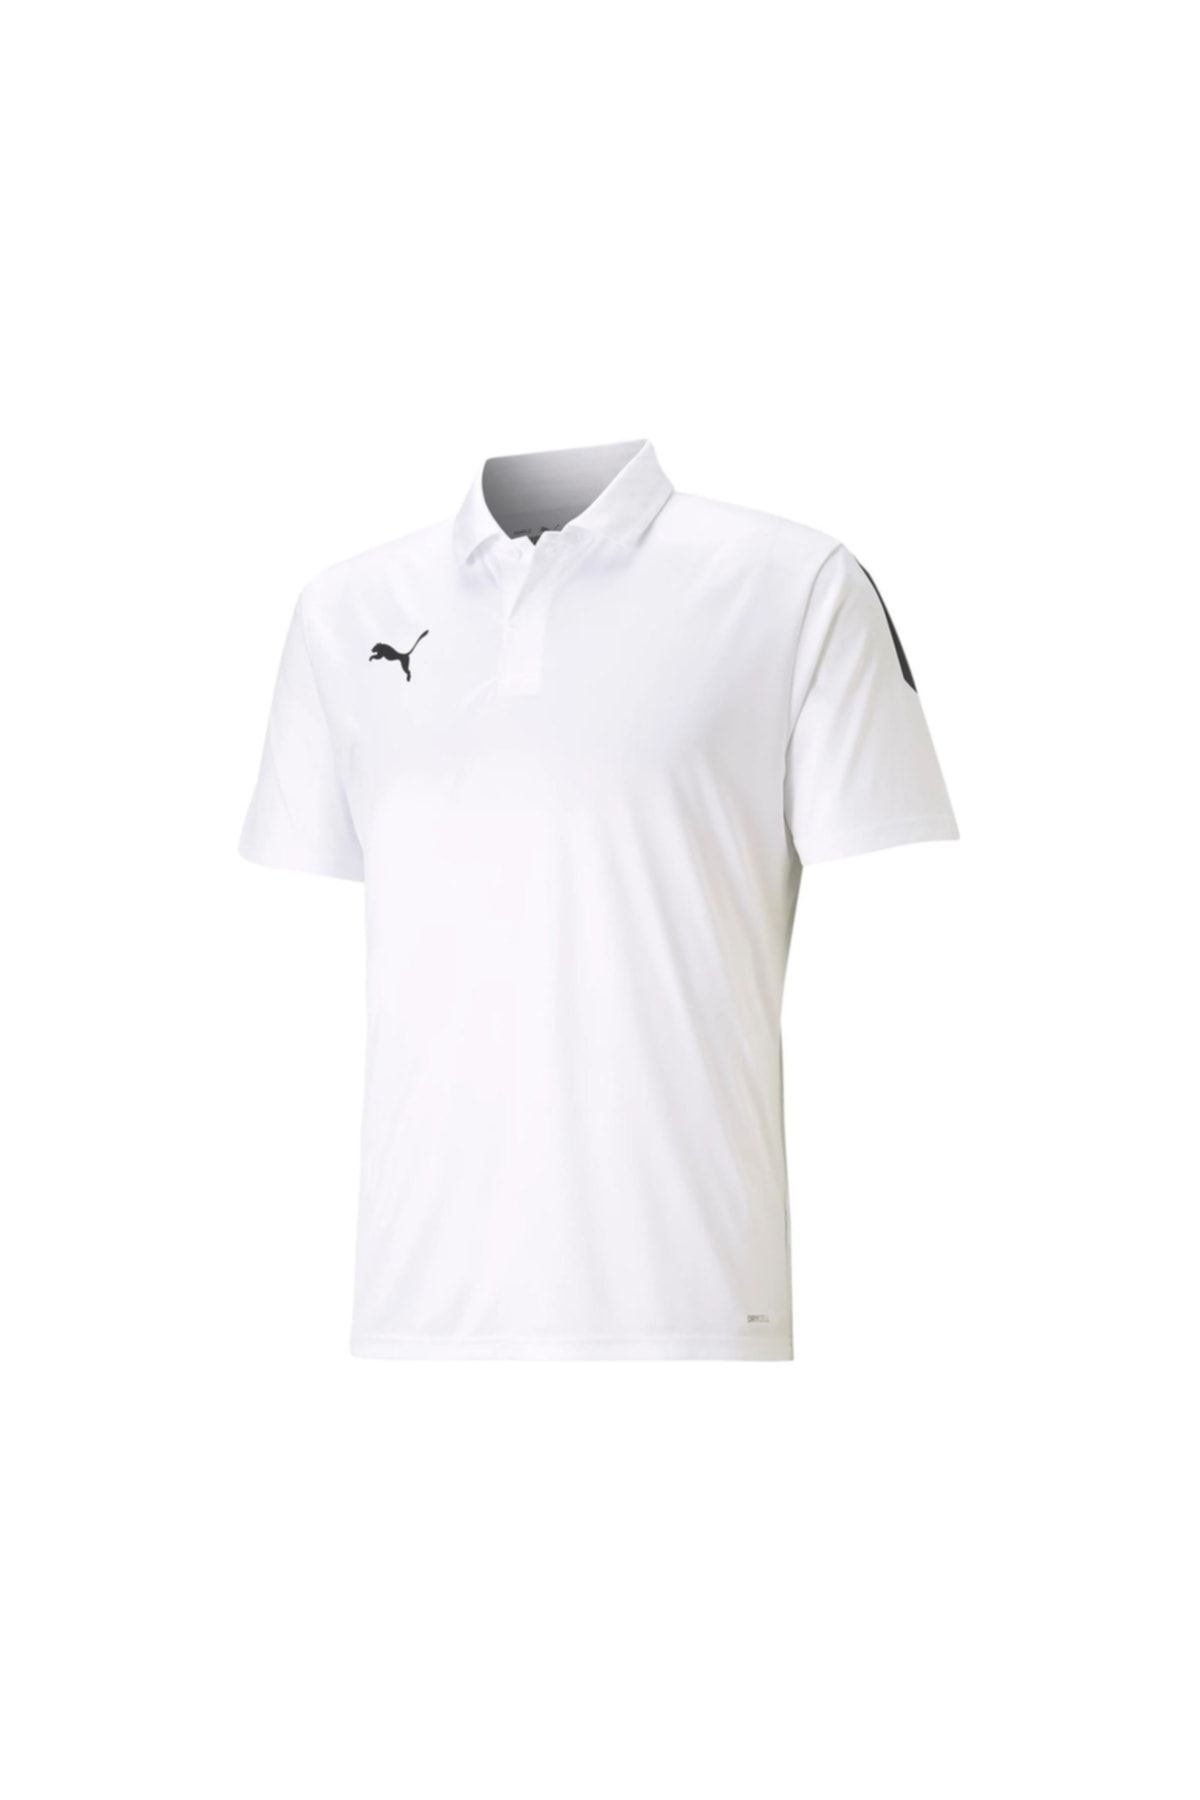 Puma Teamliga Sideline Polo Erkek Futbol Antrenman Polo Tişörtü 65725704 Beyaz